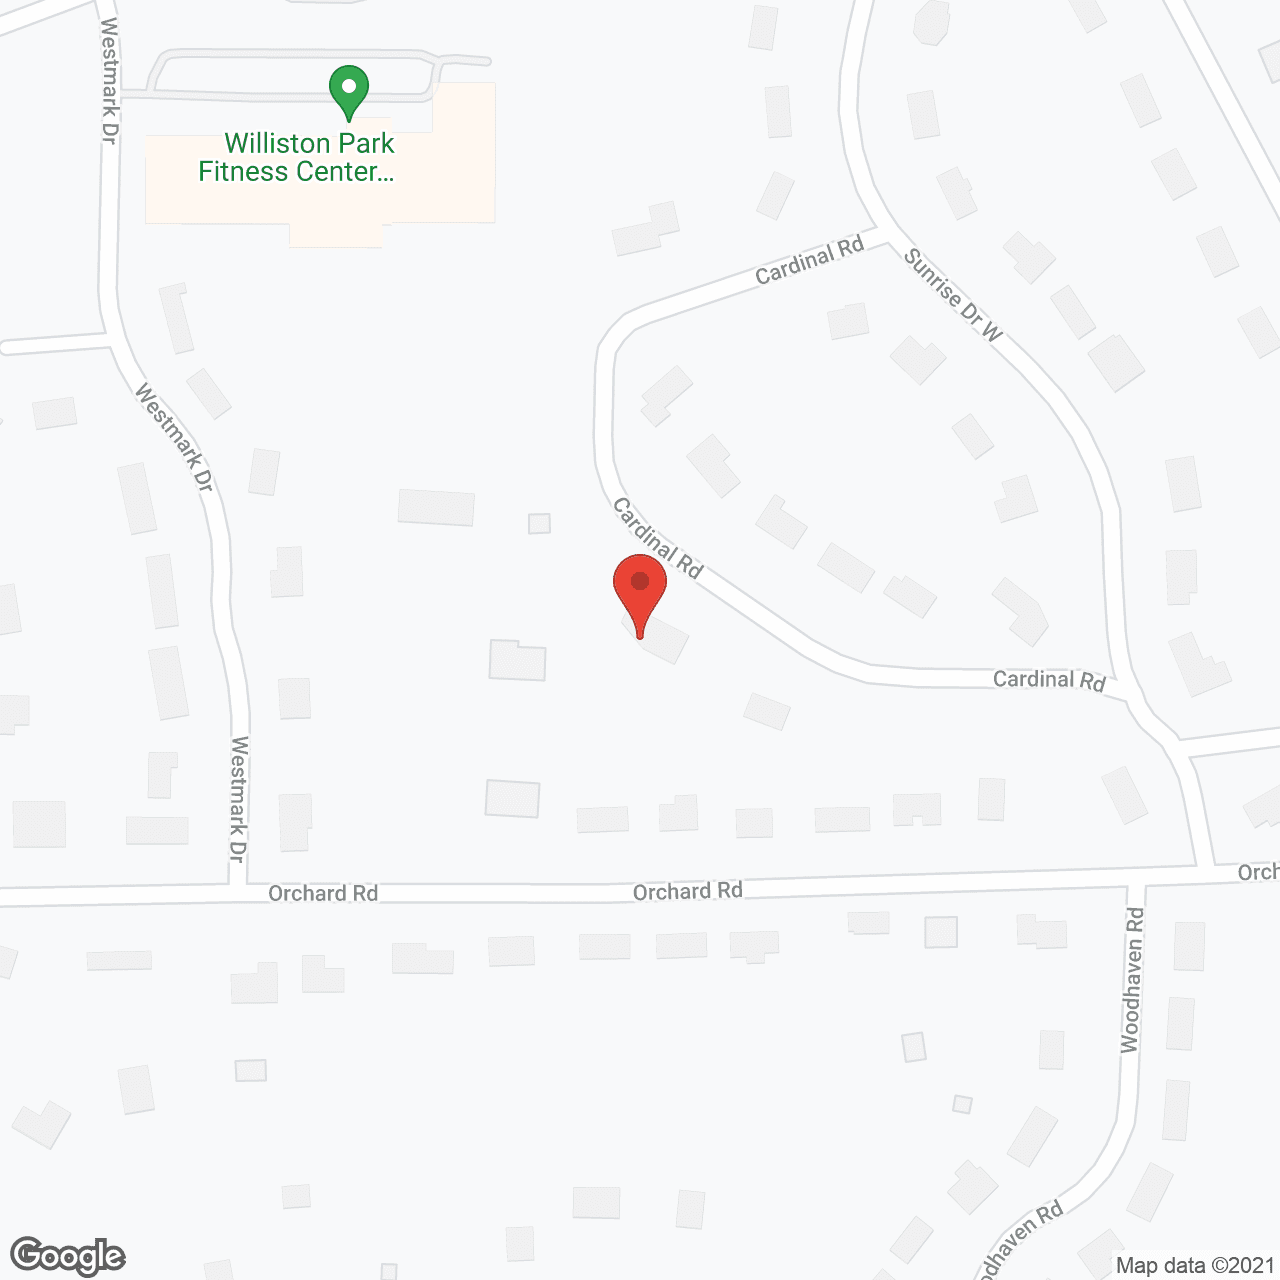 Steven's Residence in google map